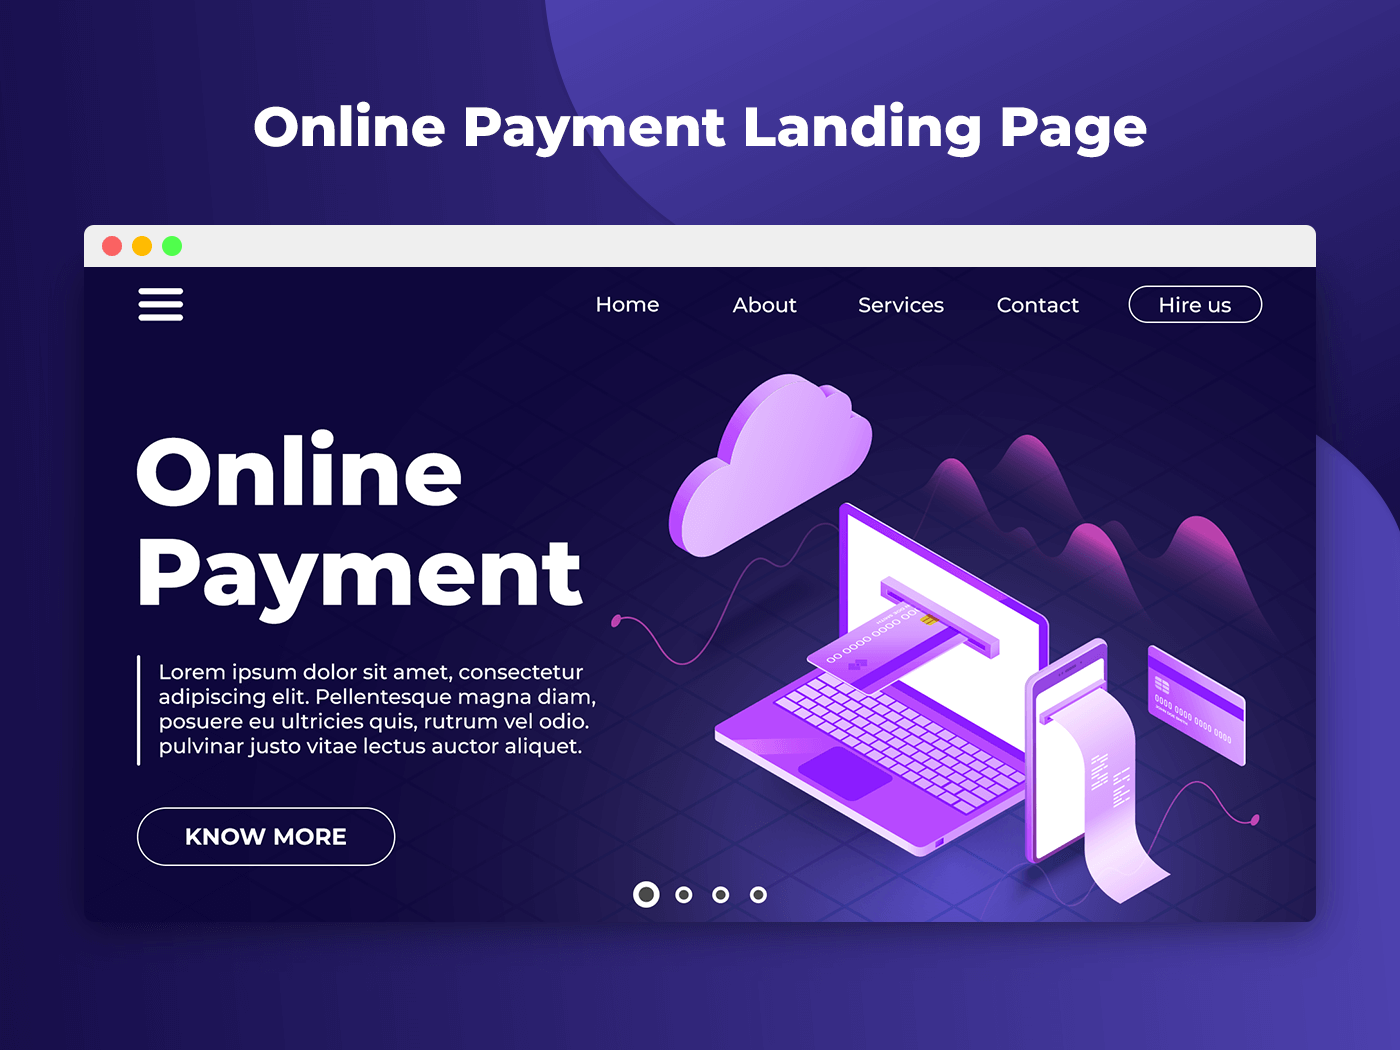 在线支付着陆页设计模版素材 Online Payment L